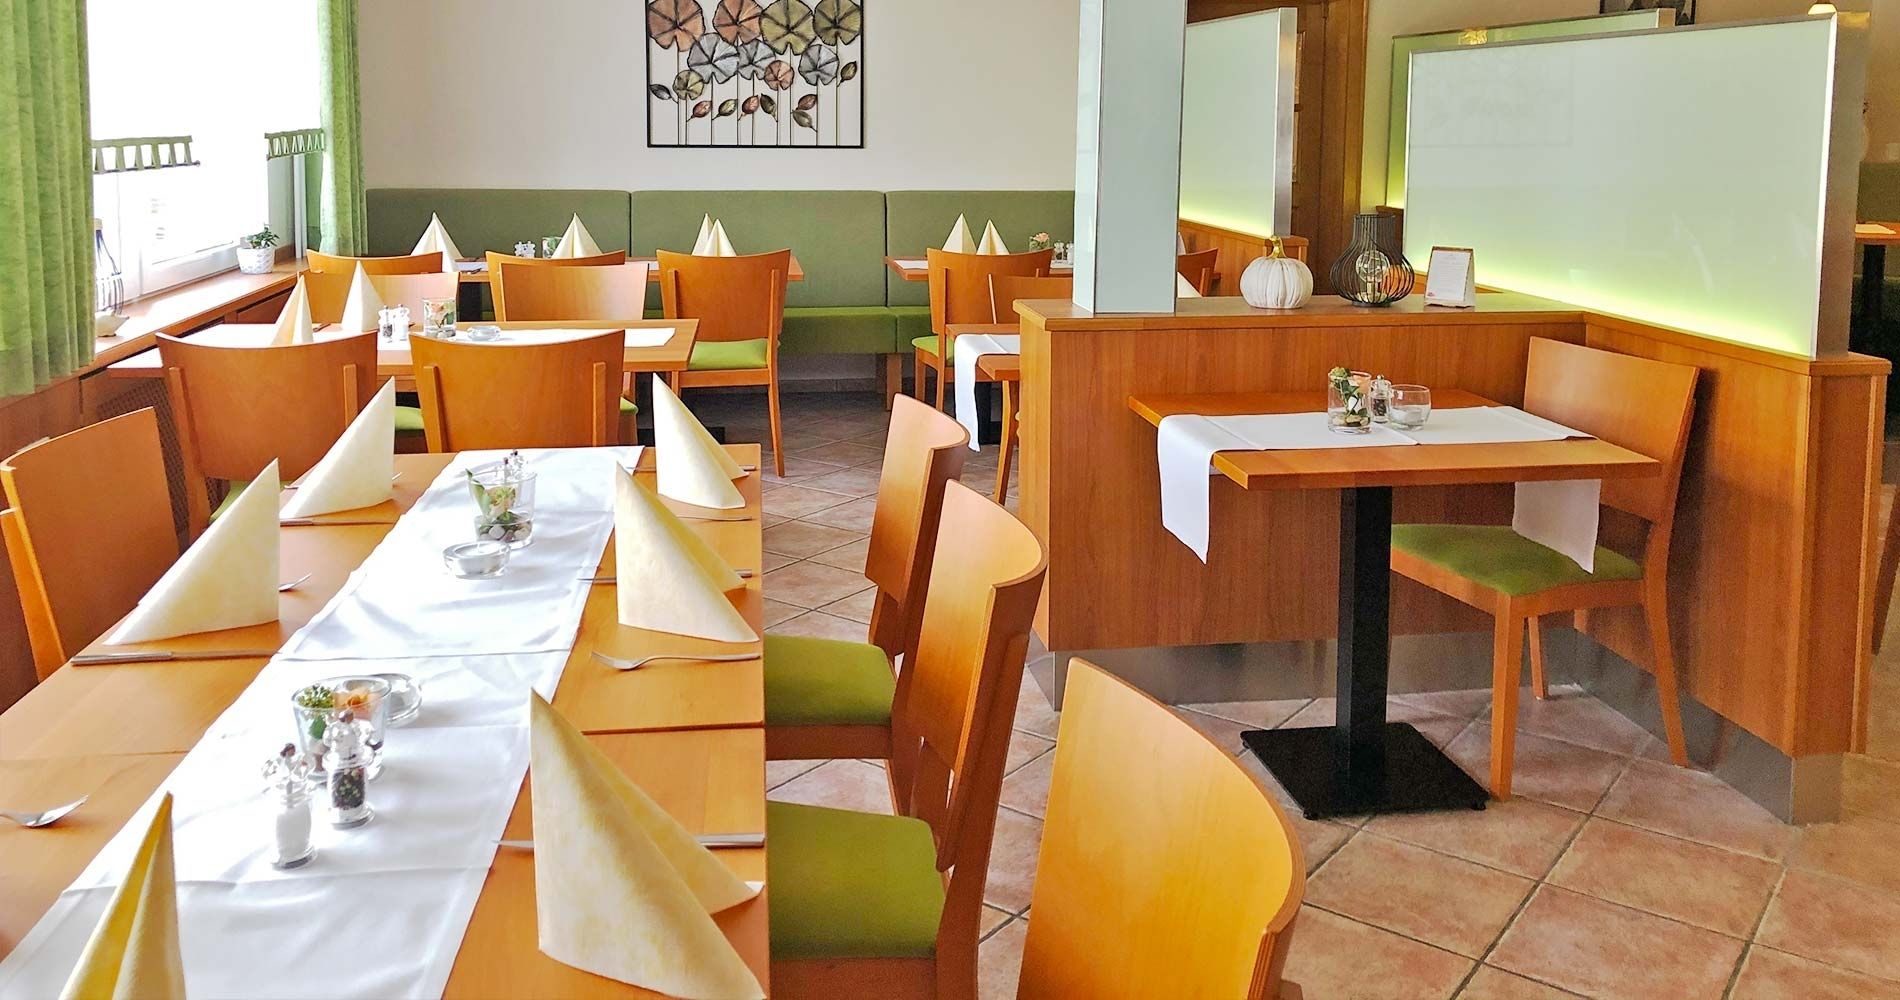 Speisegaststätte Orth - Restaurant Lenderscheid - Unsere Räumlichkeiten